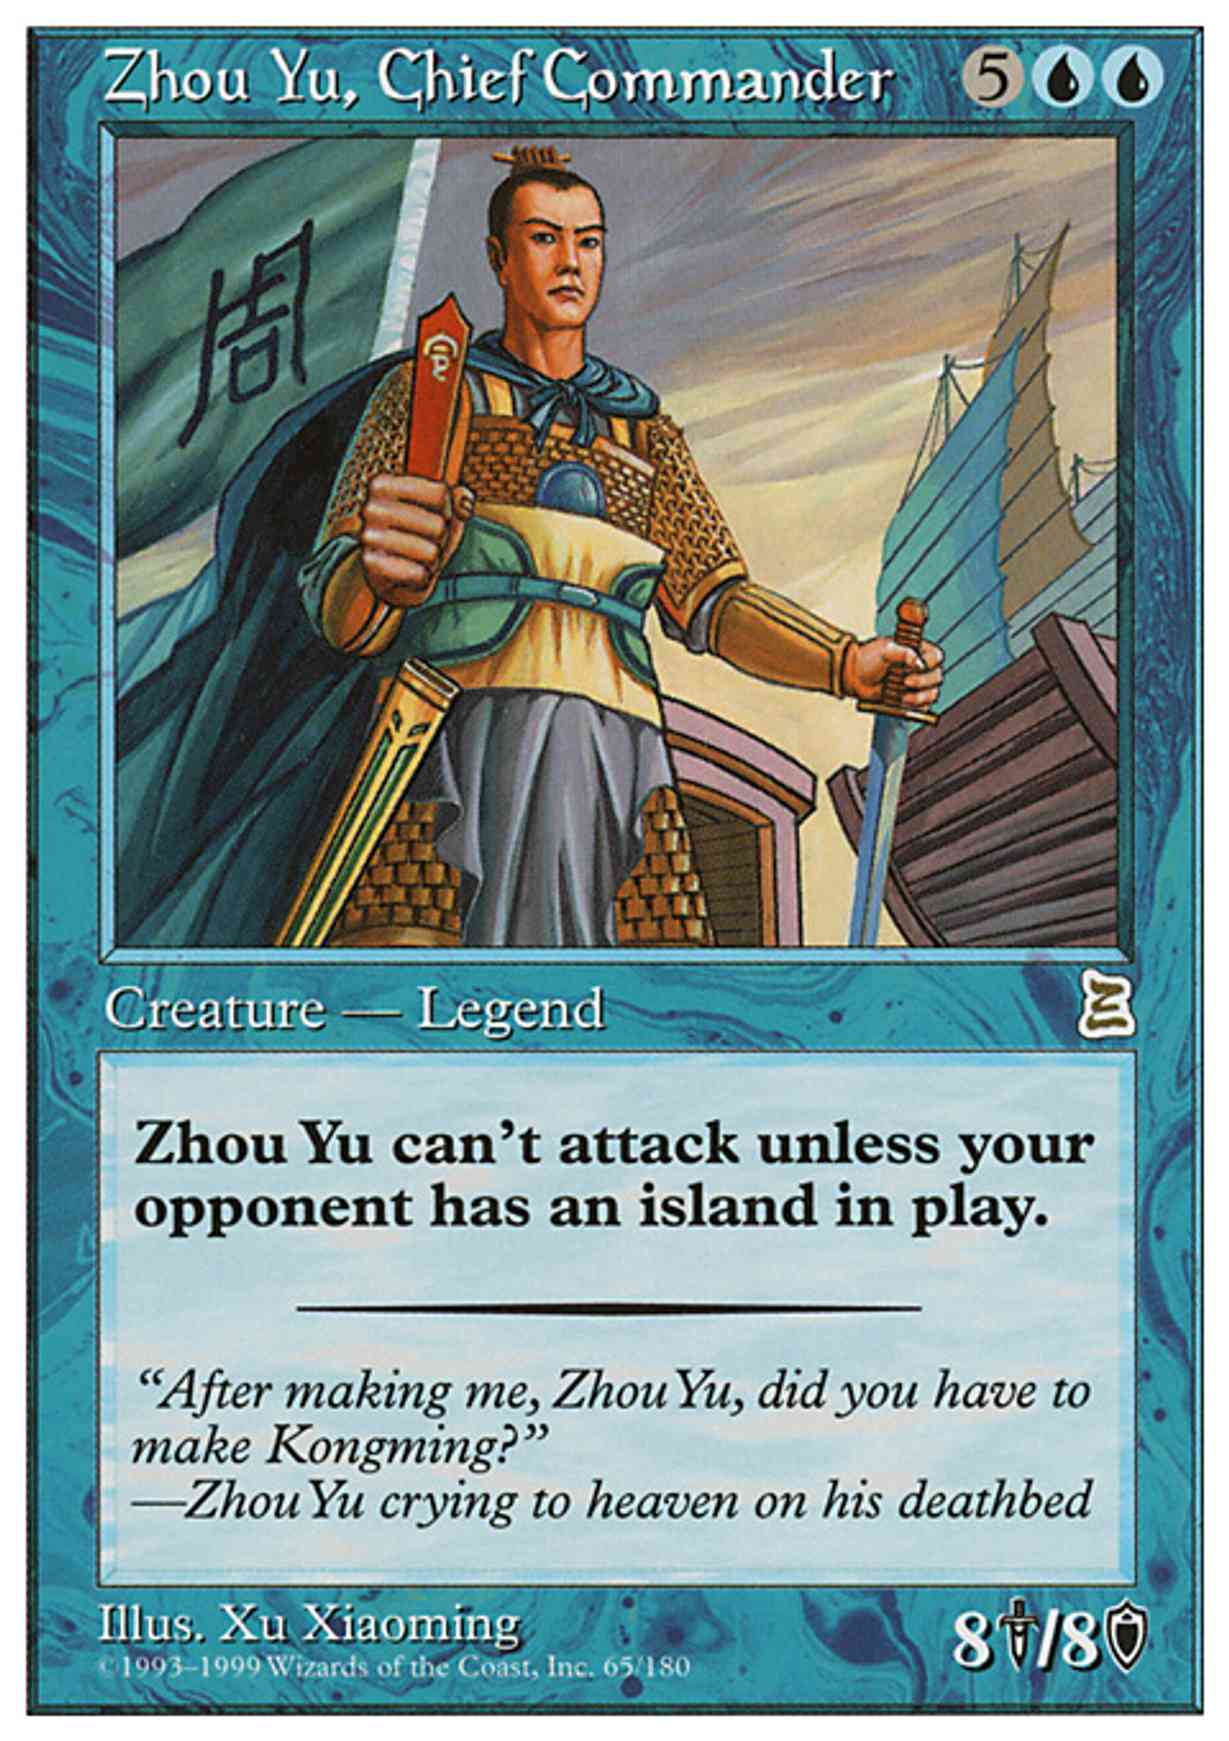 Zhou Yu, Chief Commander magic card front